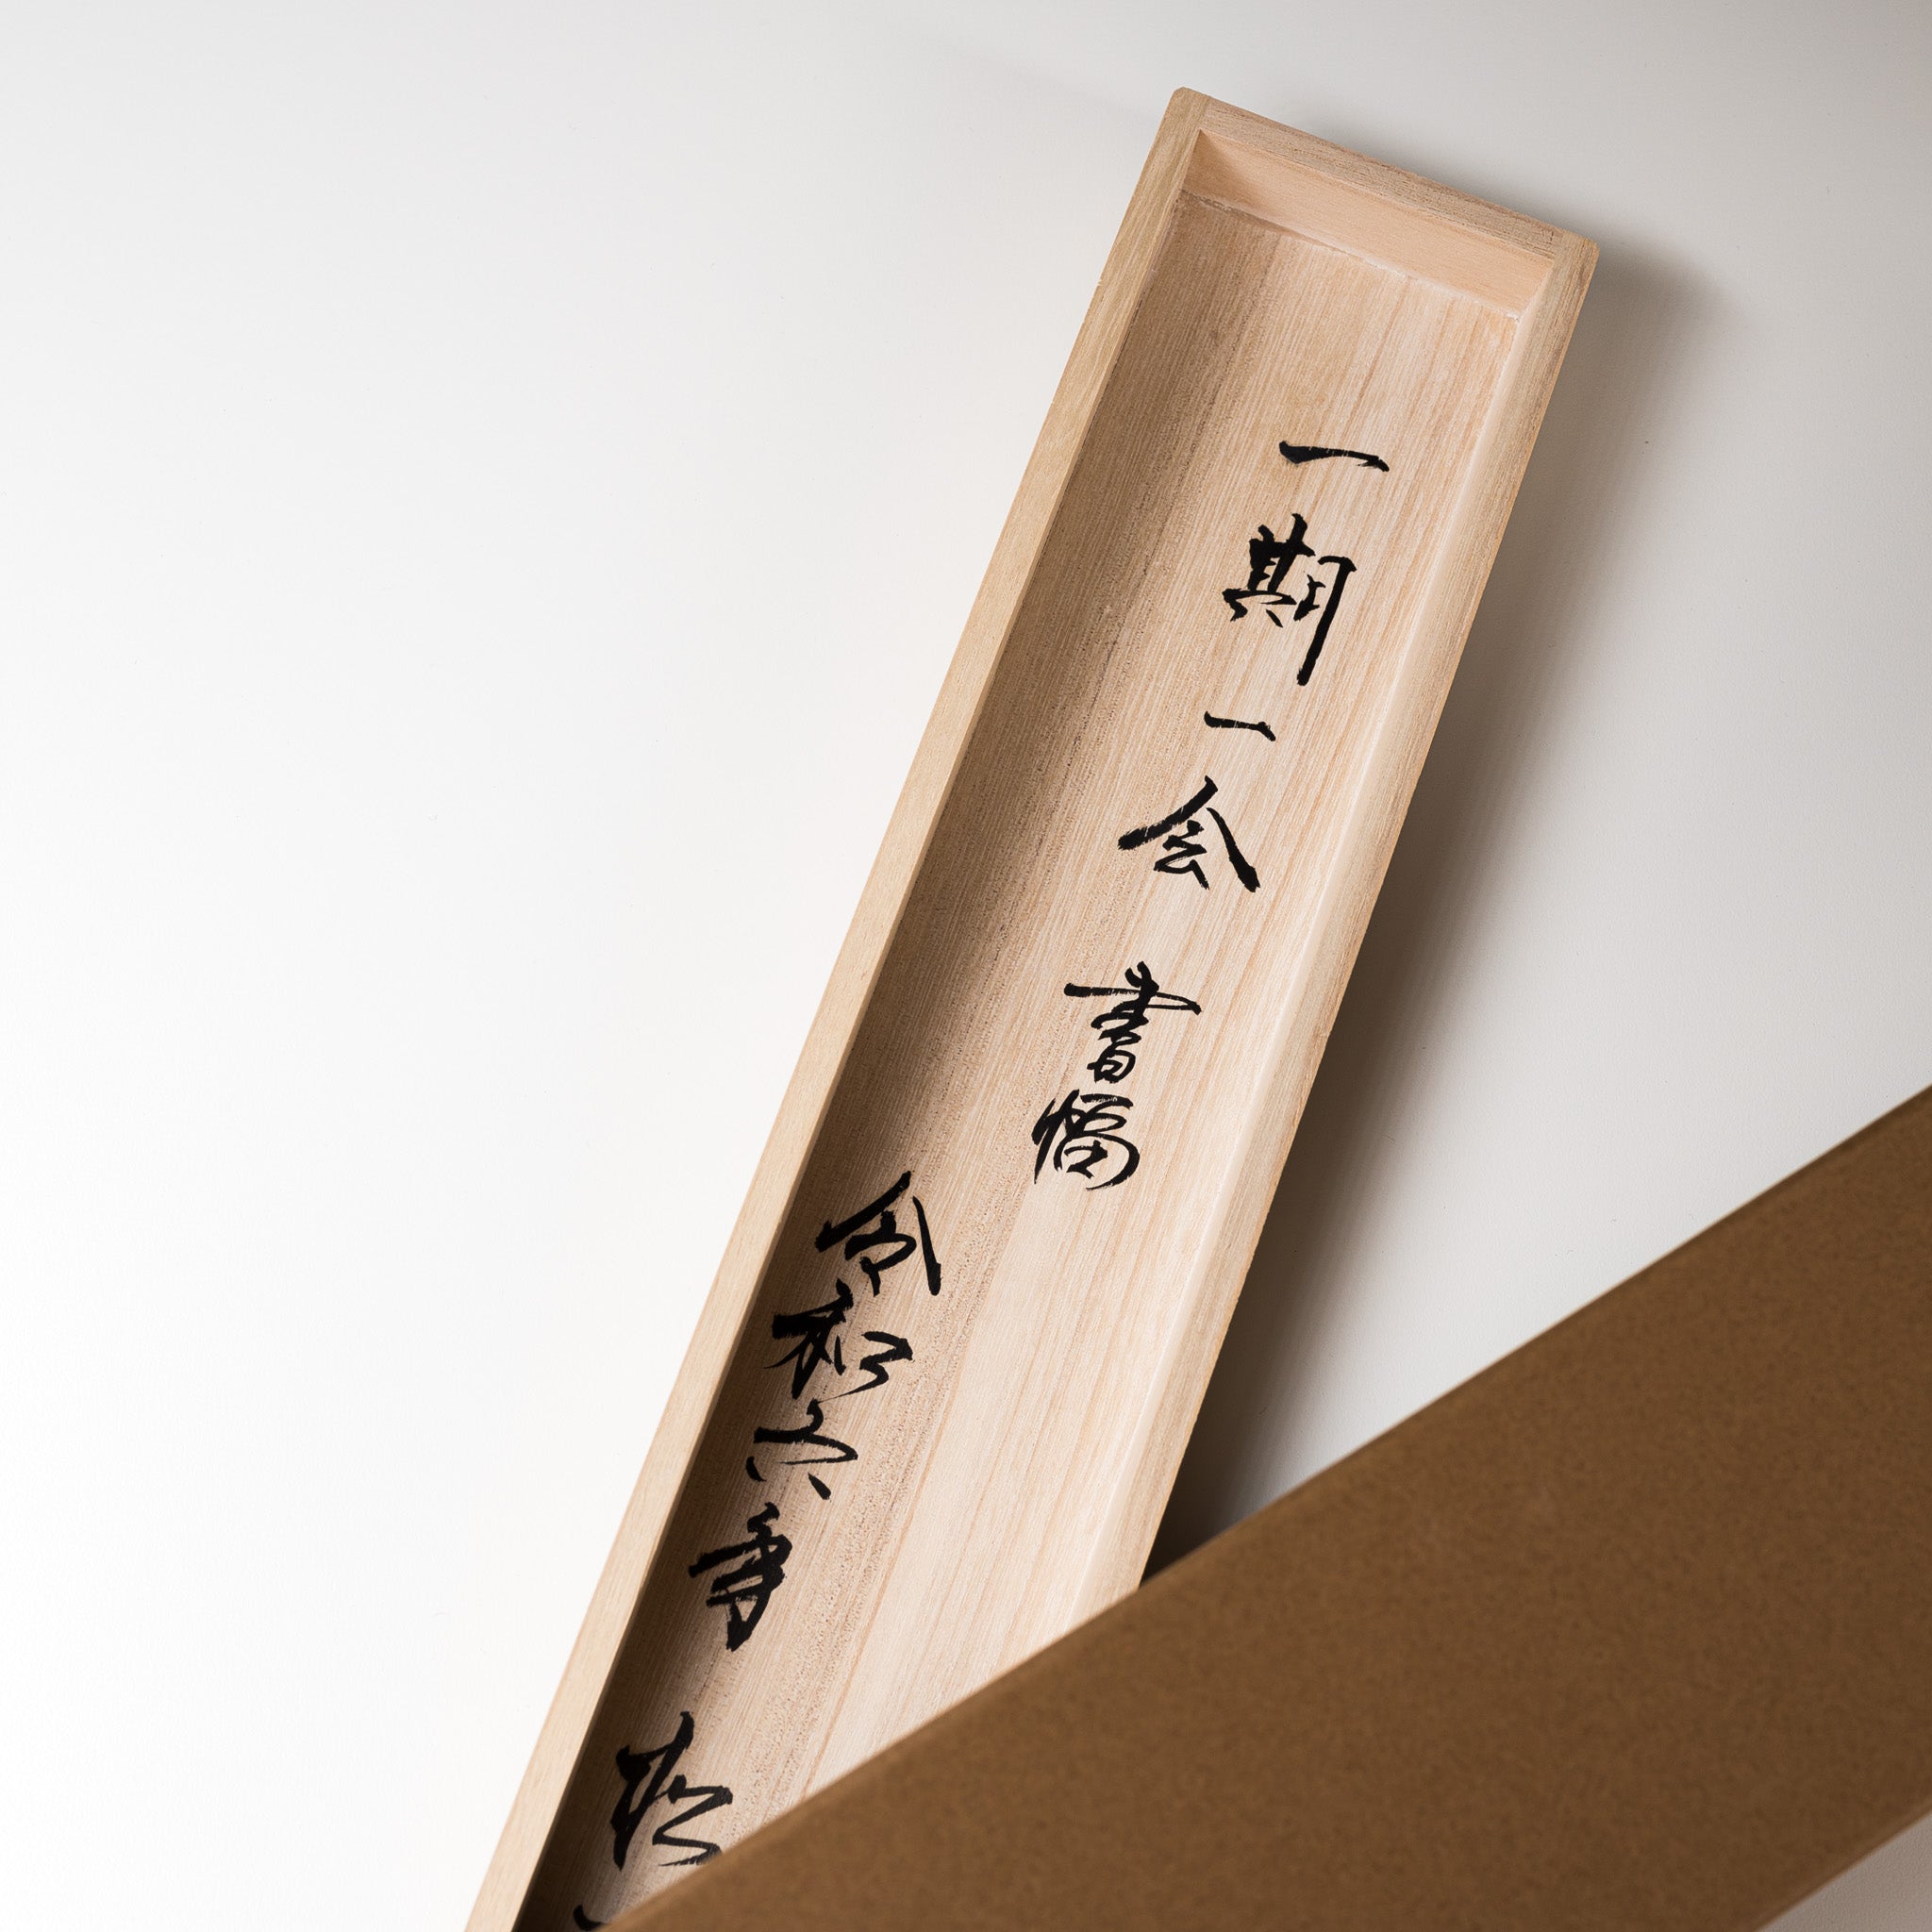 Kakejiku - Japanese Hanging Scroll / 掛け軸 "一期一会"